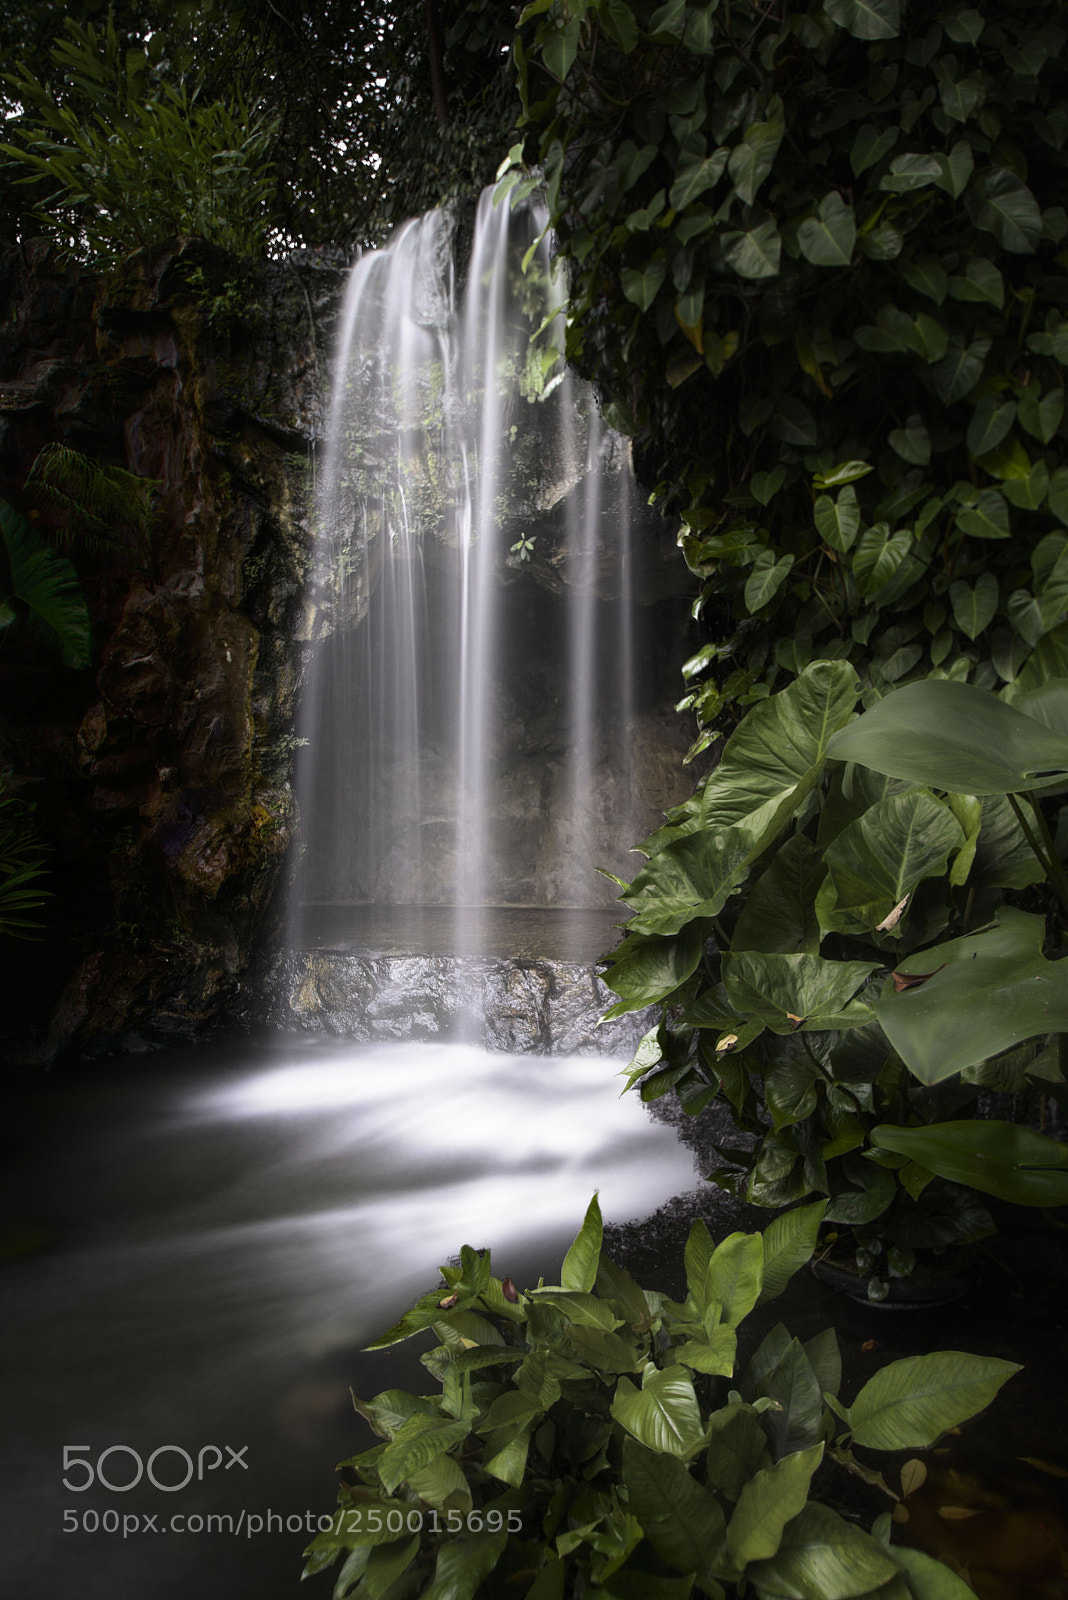 Pentax K-1 sample photo. Waterfall at botanic garden photography